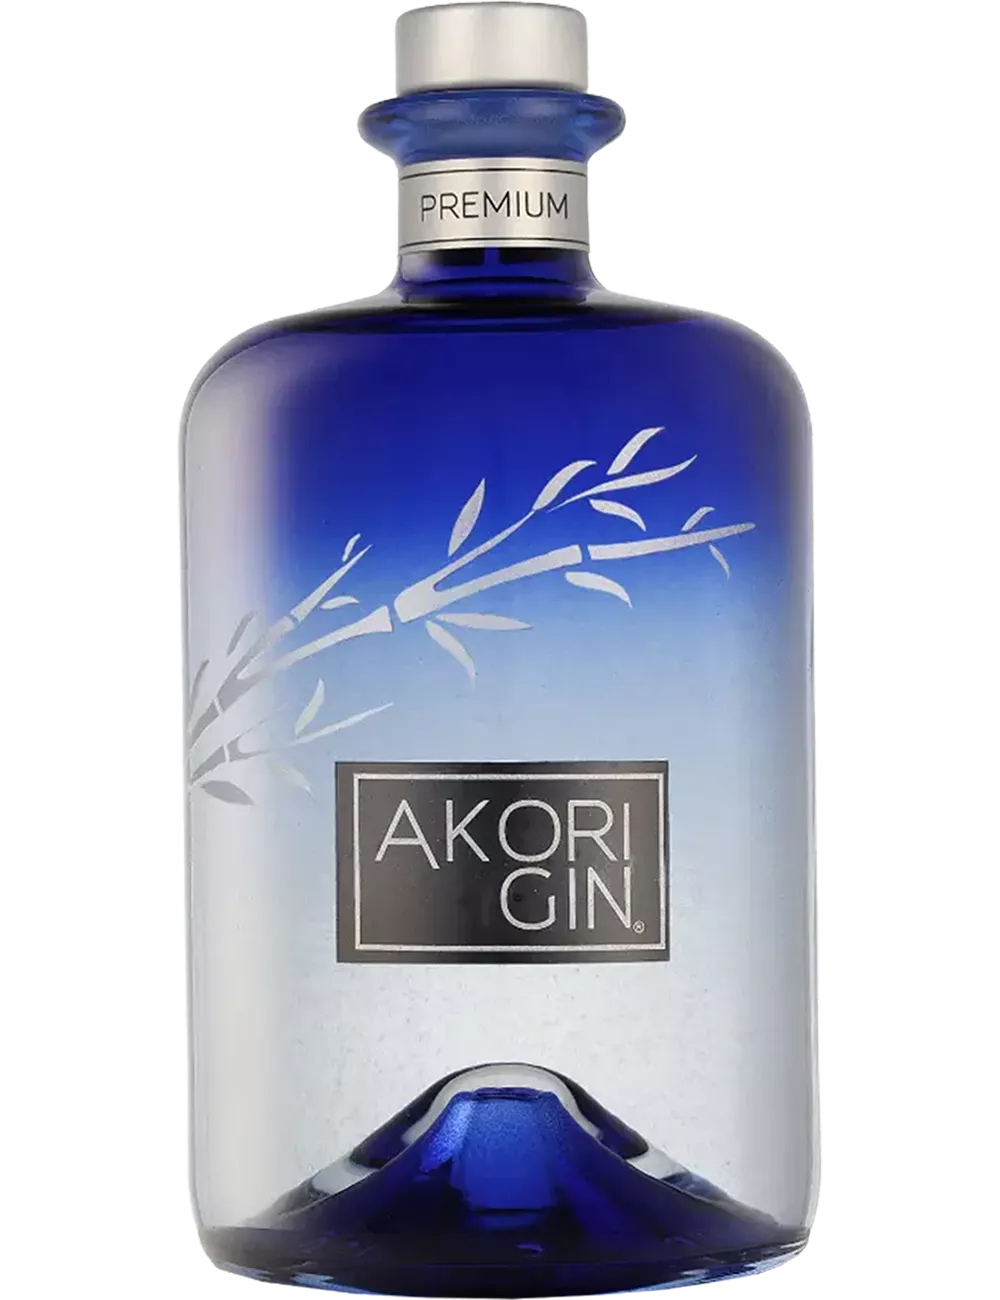 Akori - Distilled gin